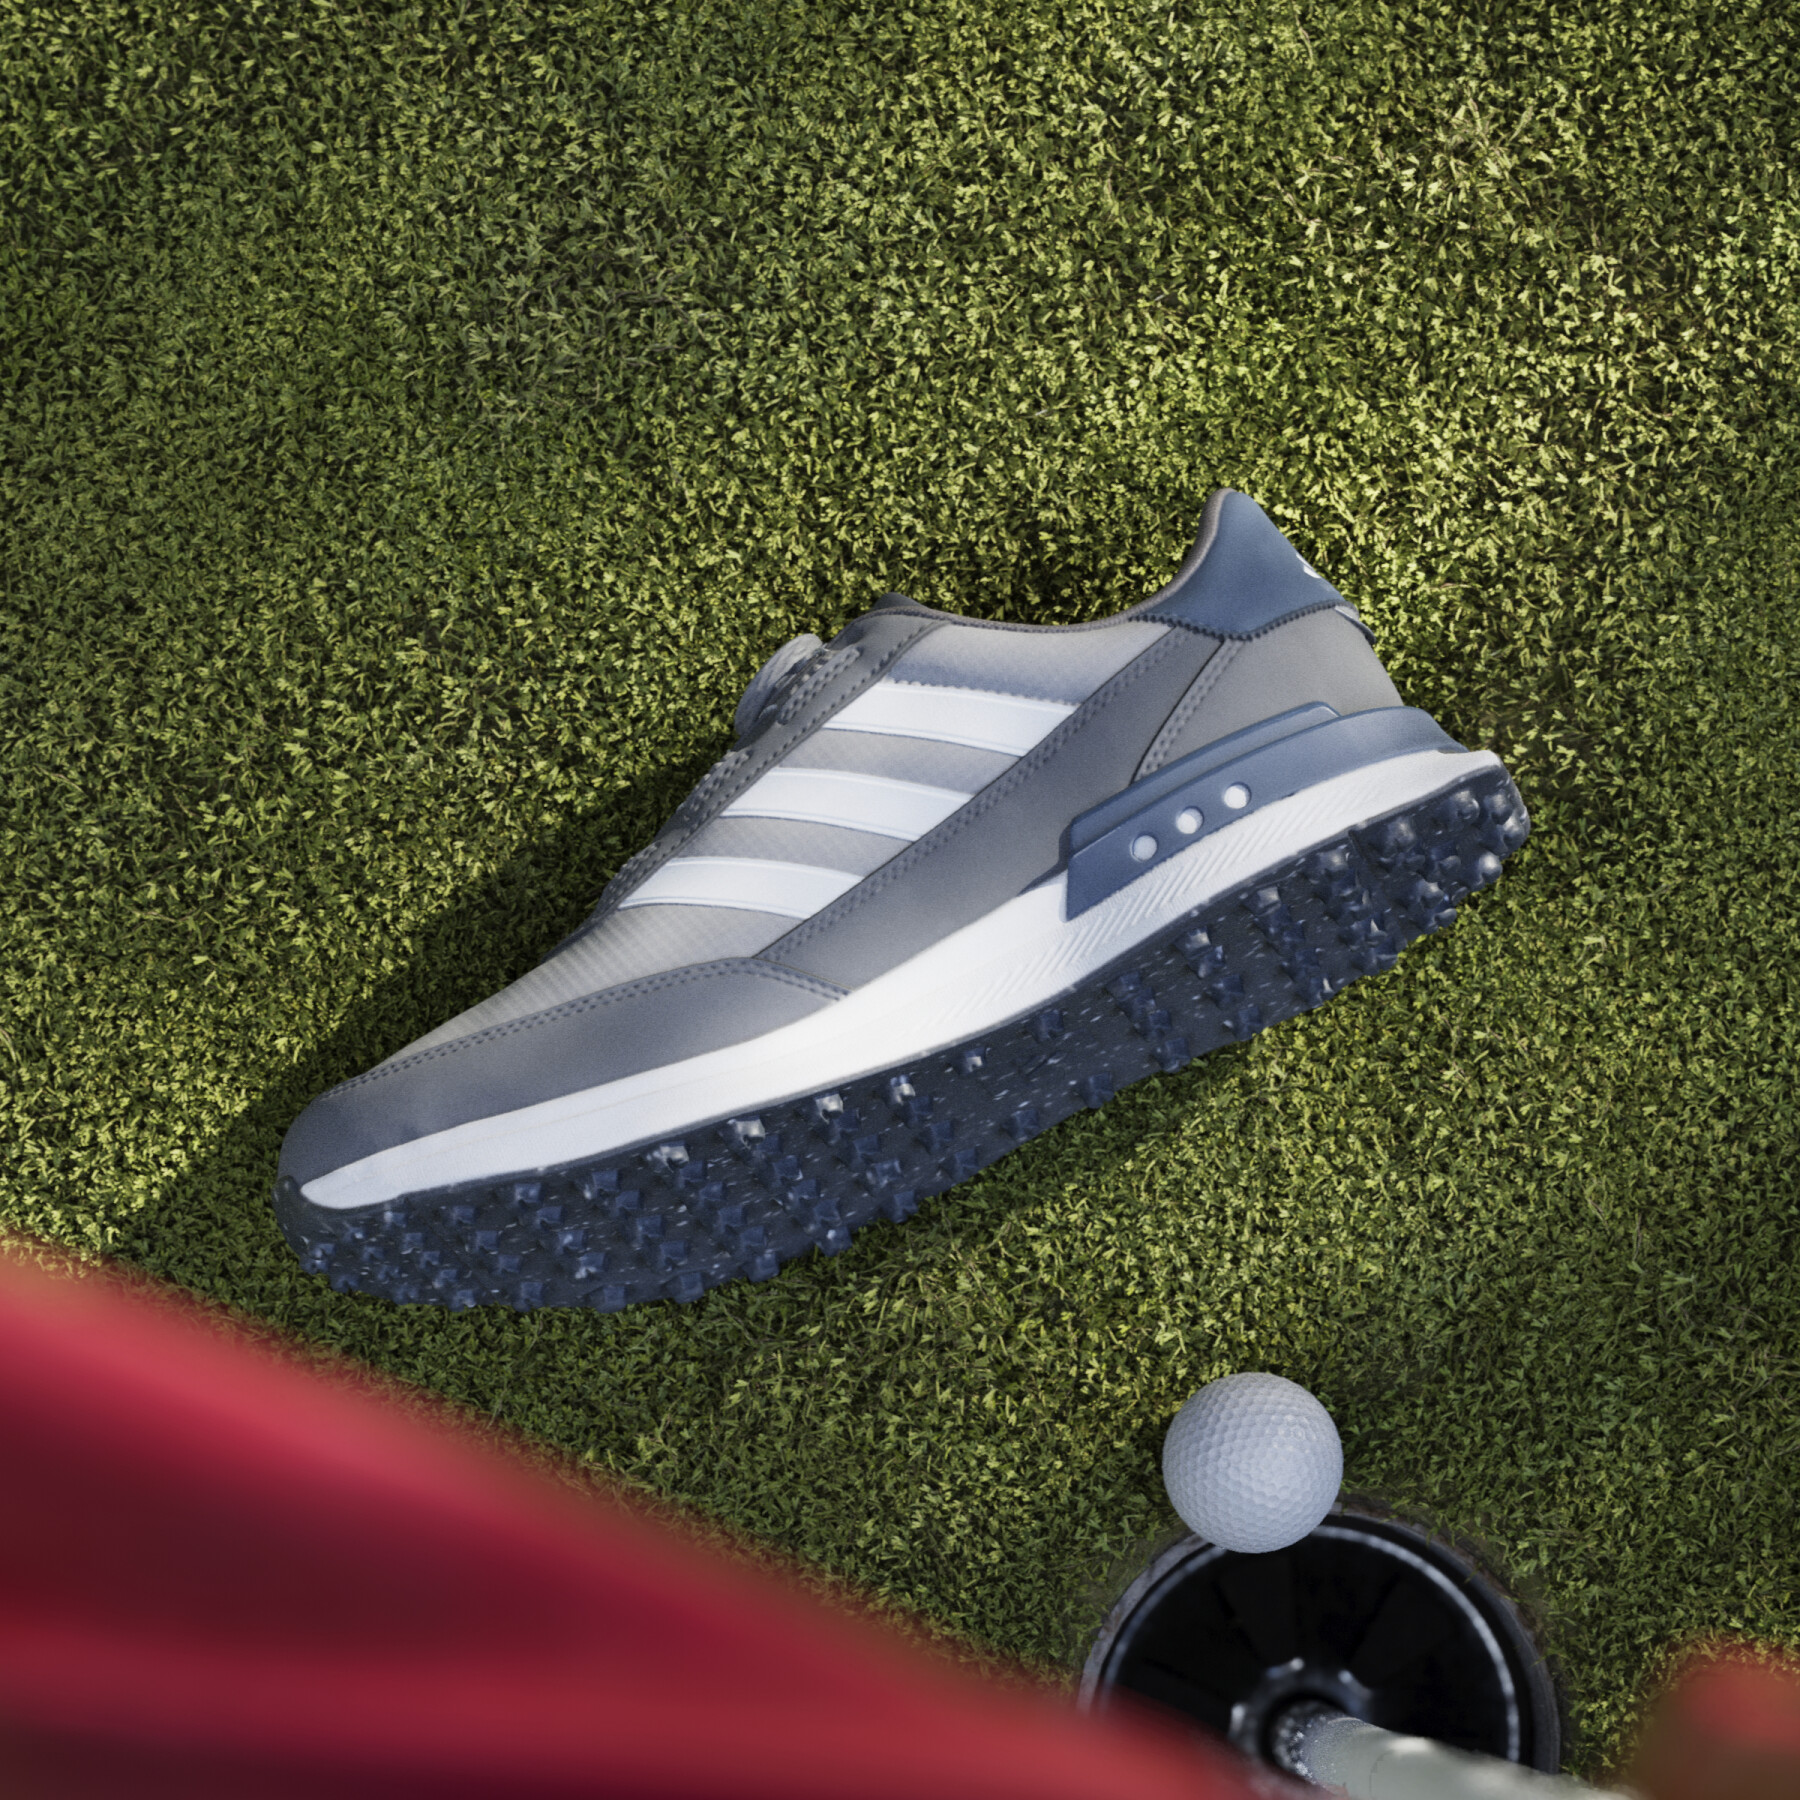 Zapatos de golf sin clavos adidas S2G BOA 24 Wide